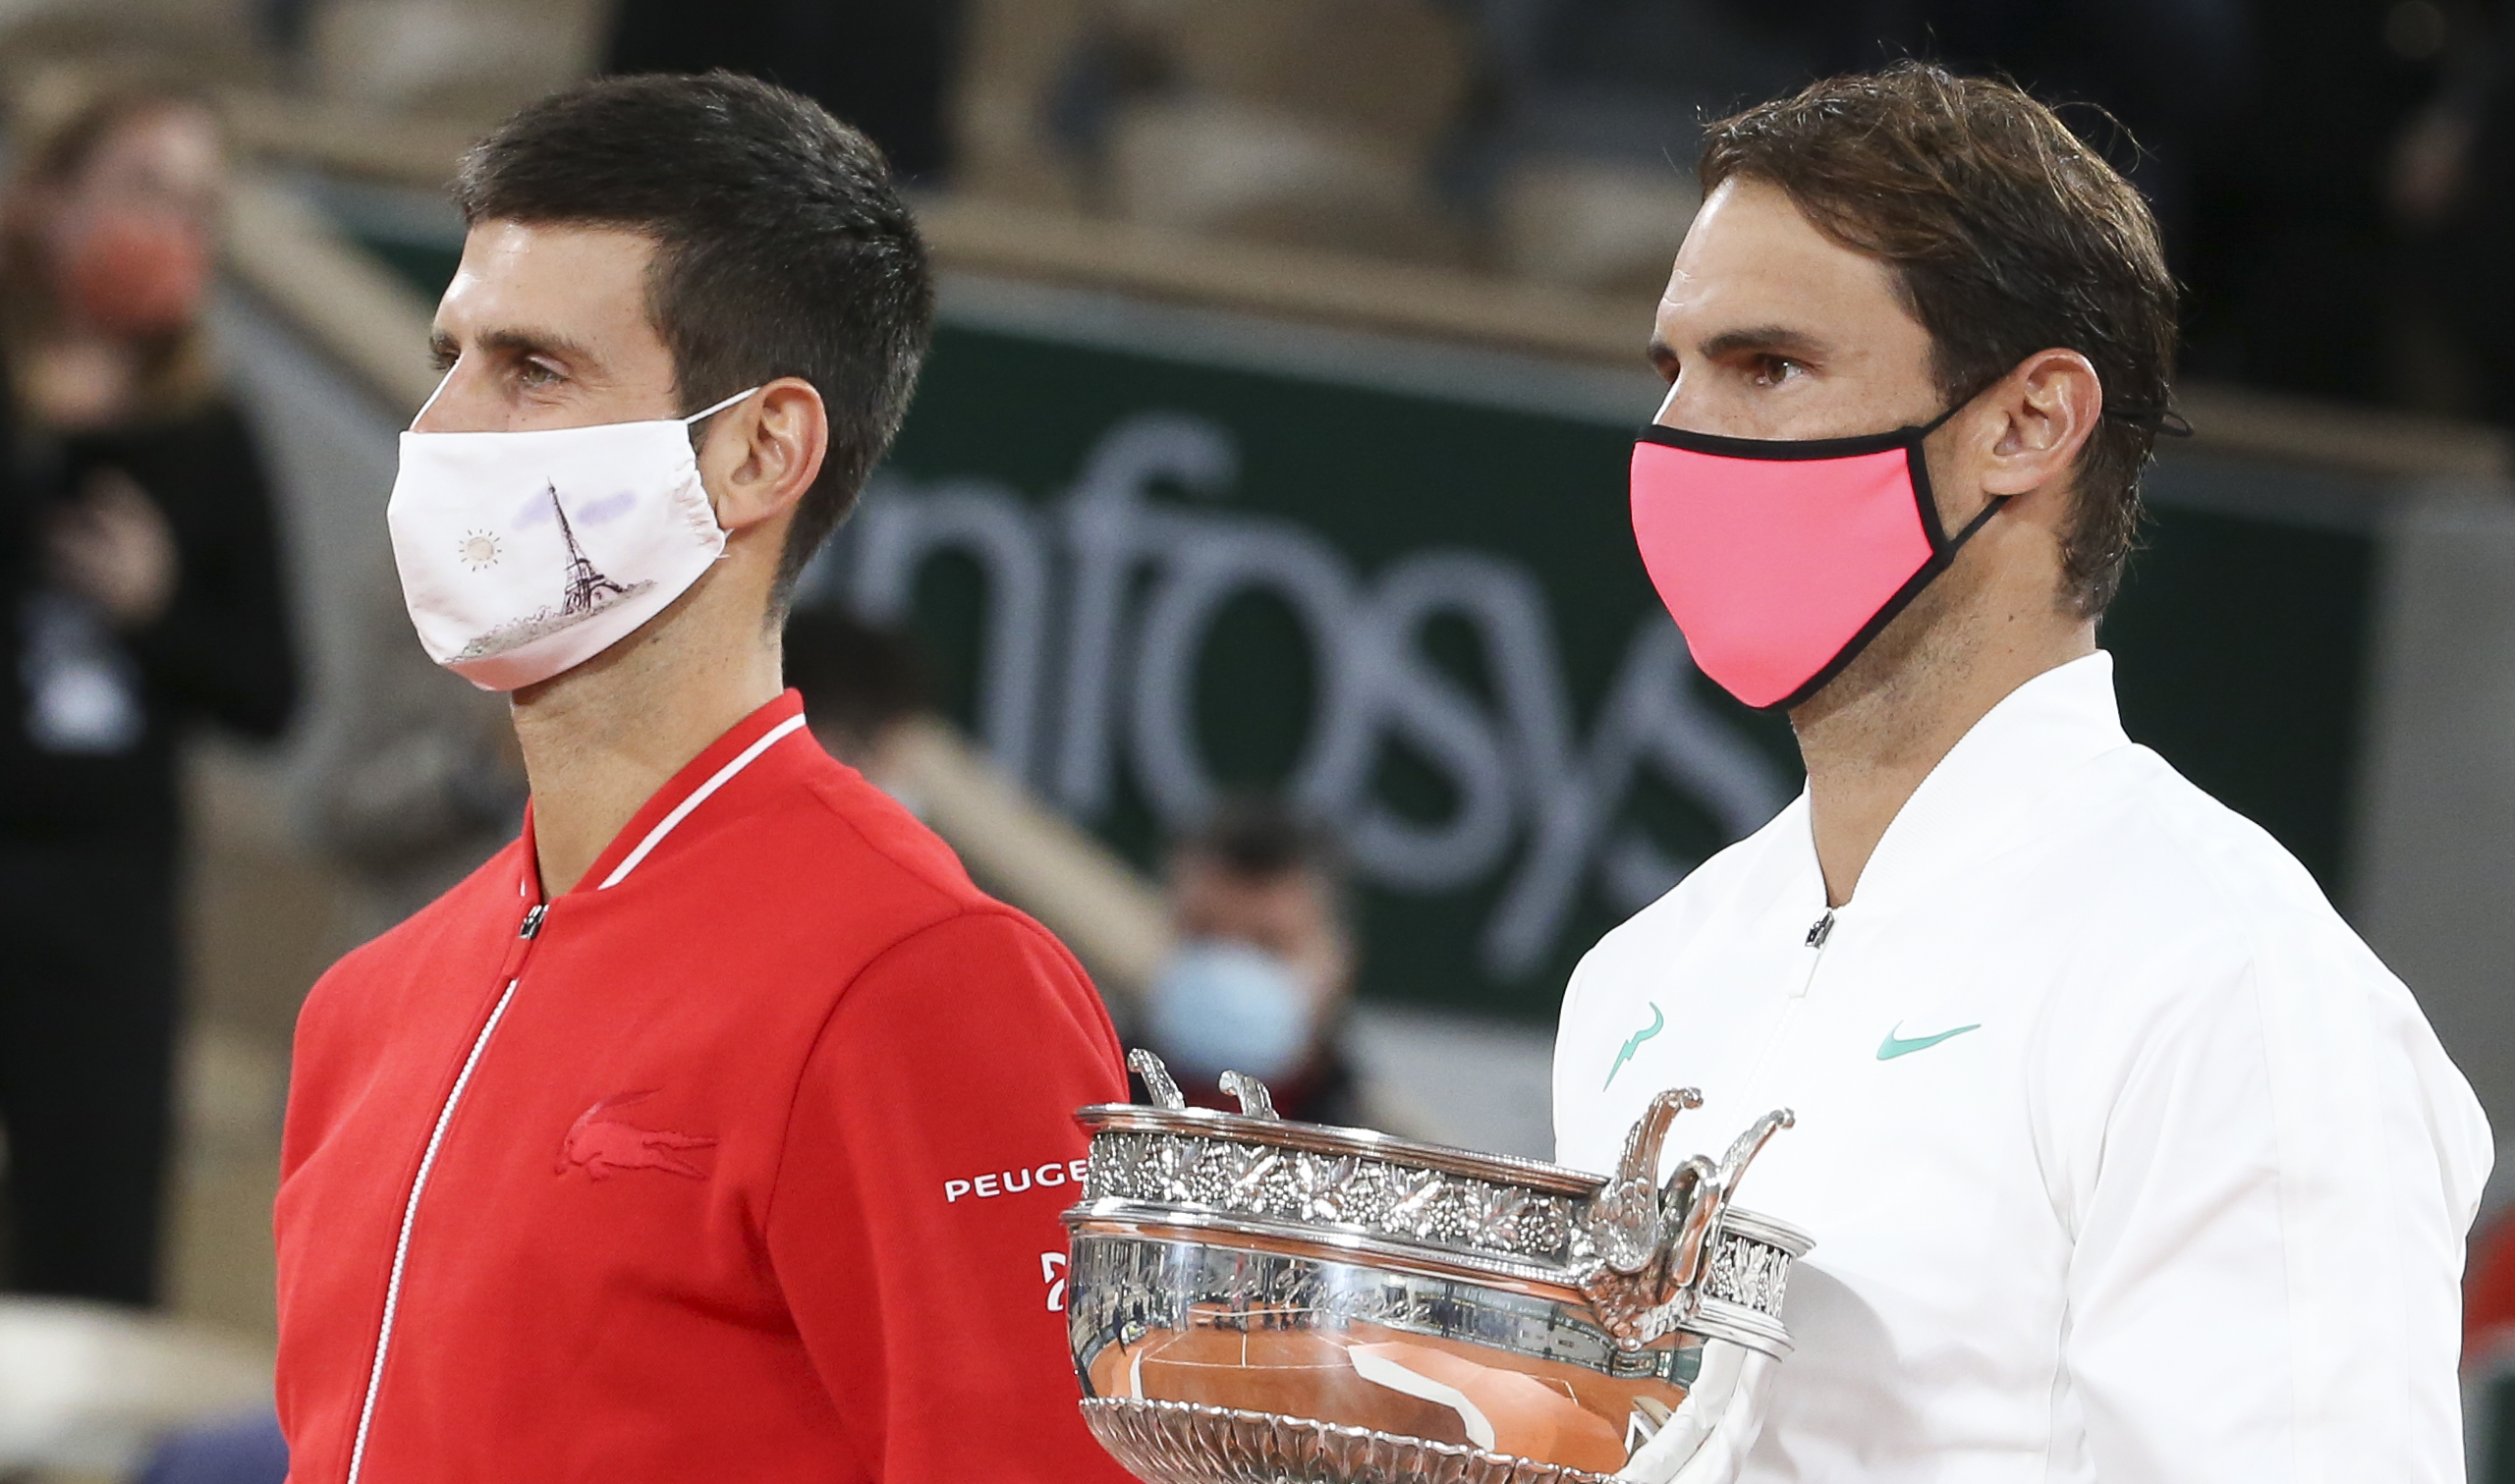 Elhalaszthatják az idei Roland Garrost a koronavírus miatt